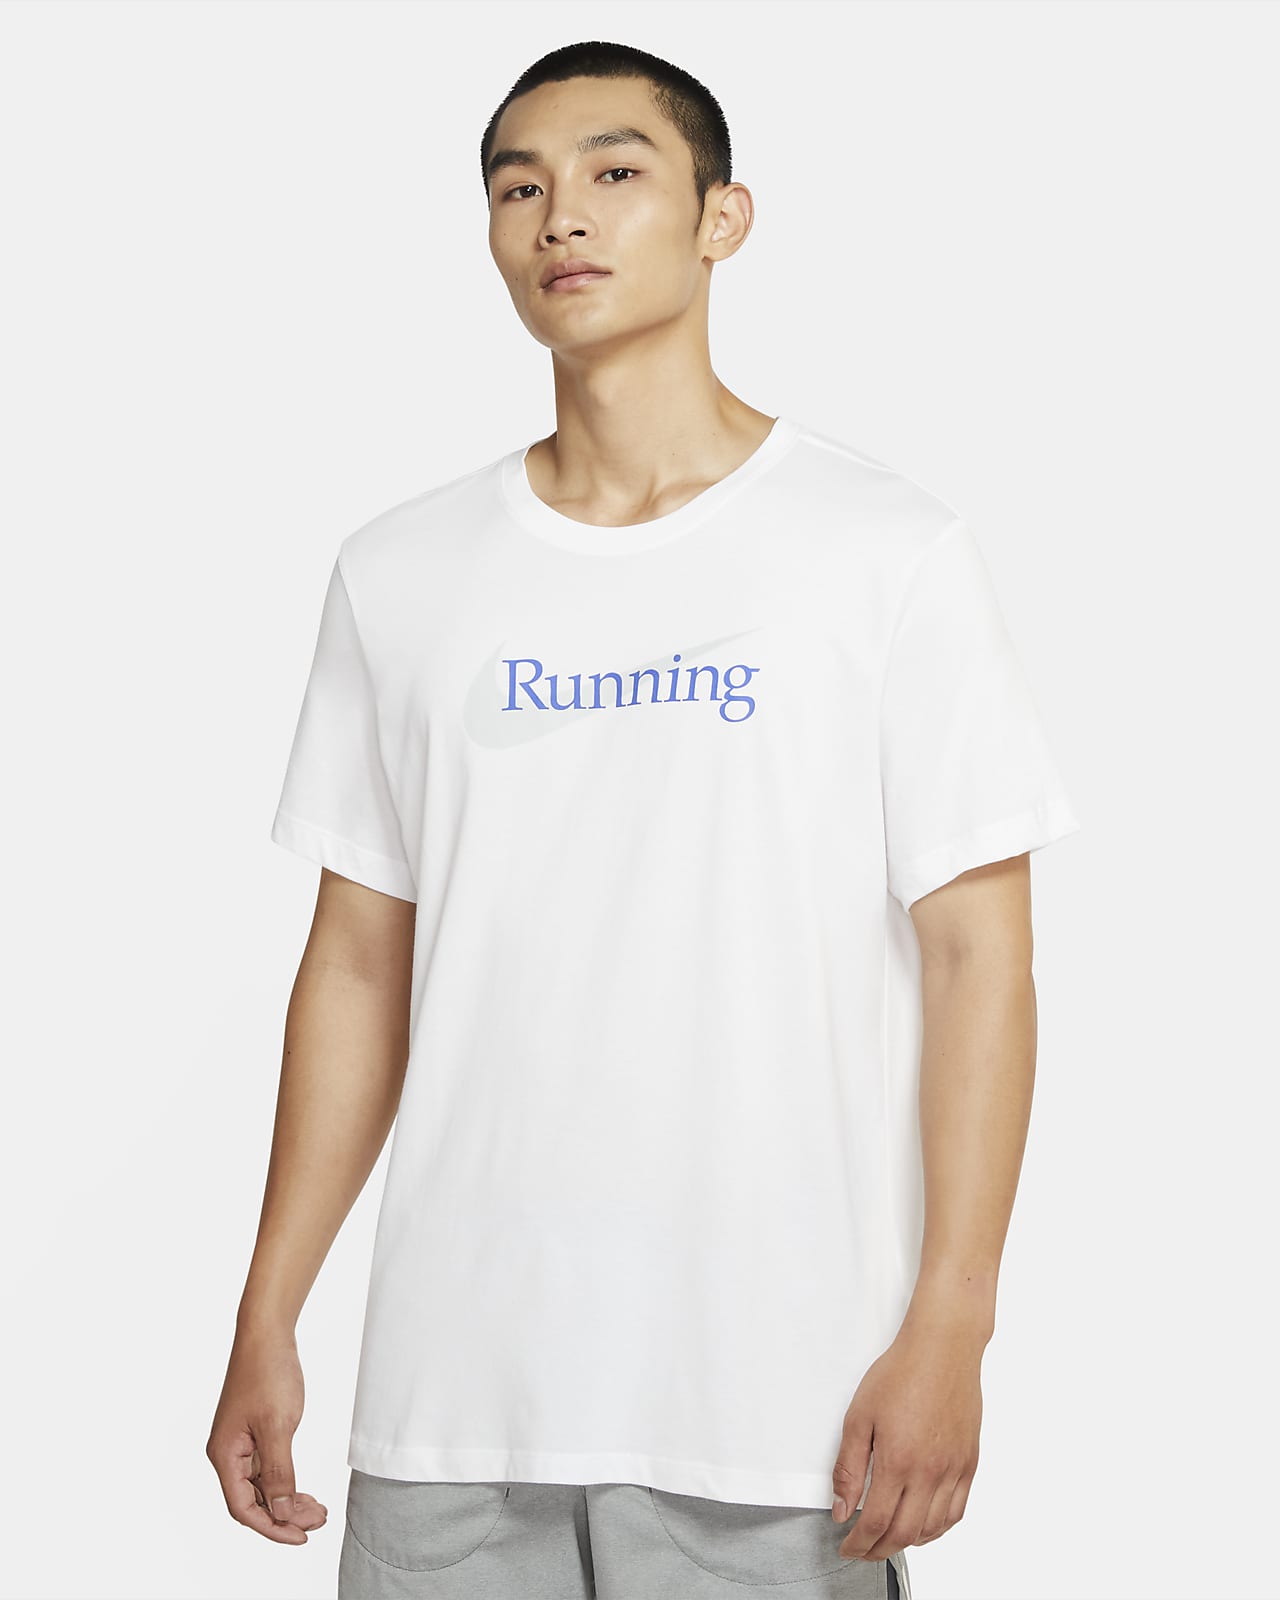 nike running t shirt